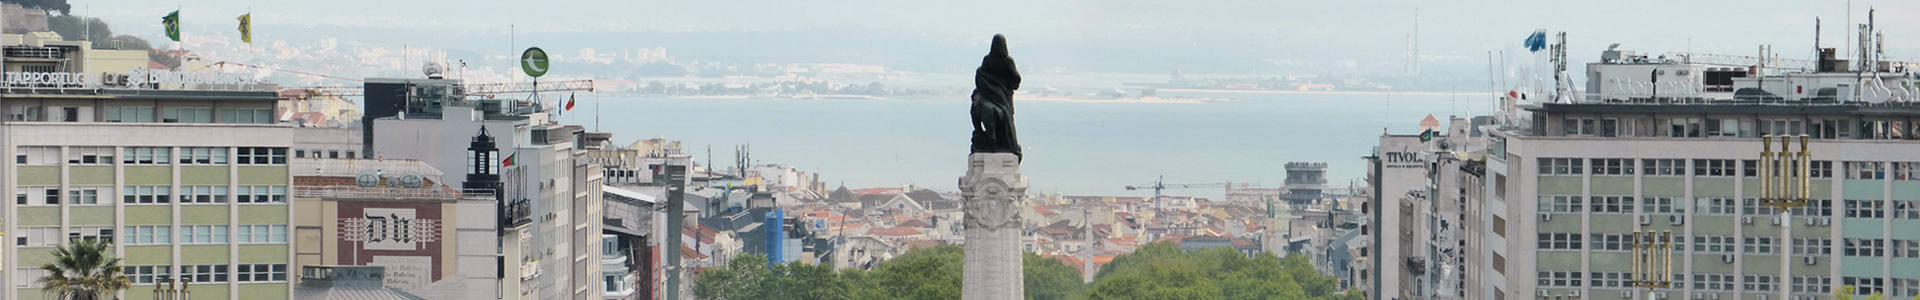 Lisbon - Marquês de Pombal